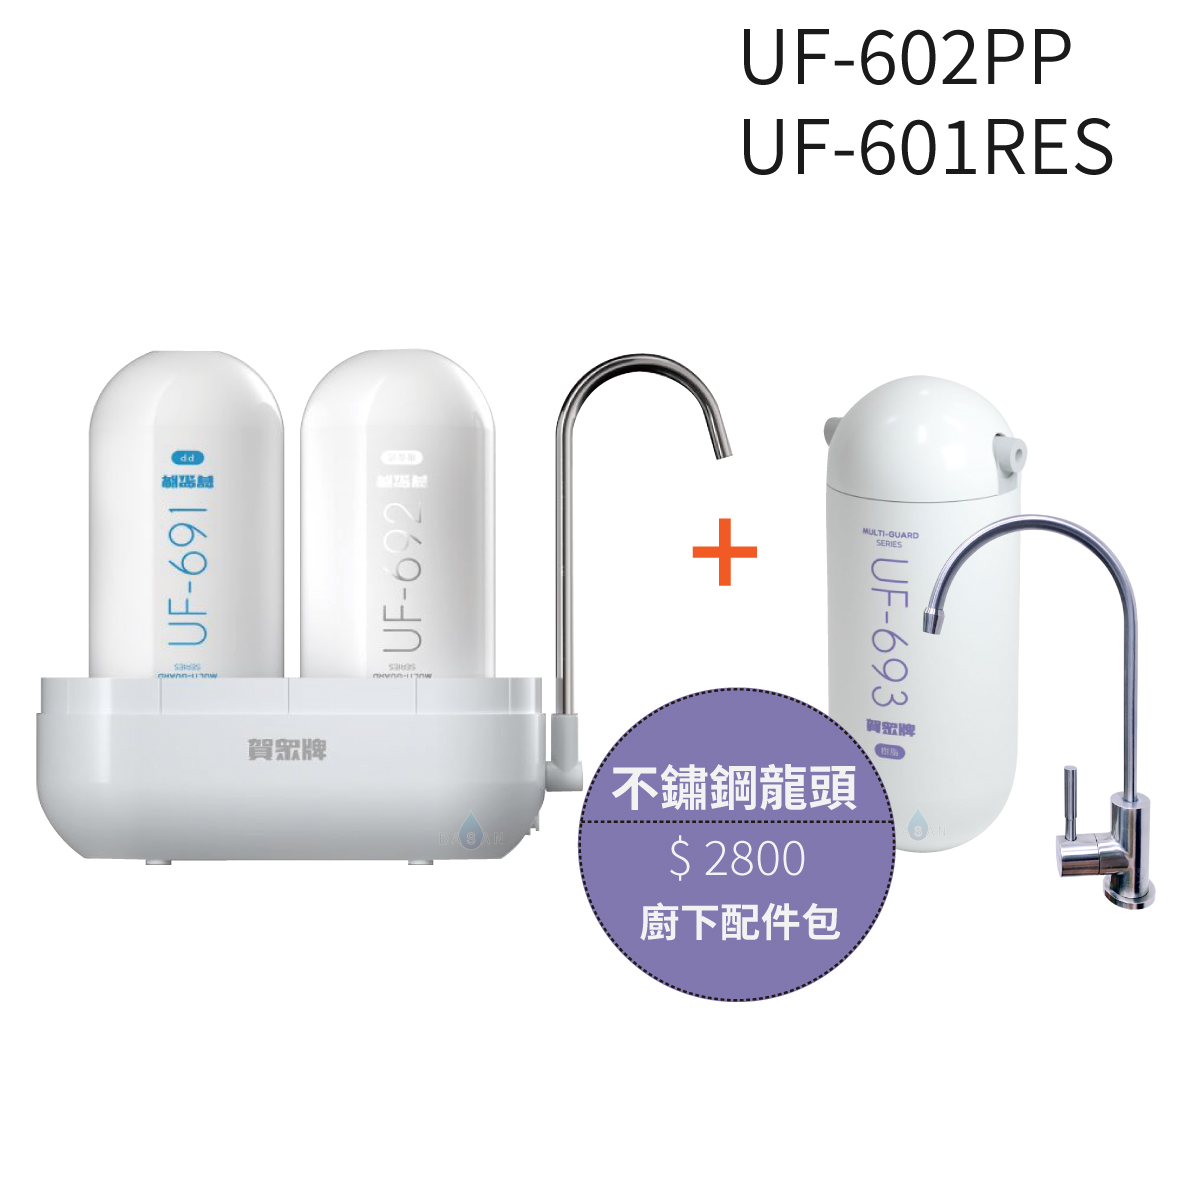 【賀眾牌】UF-602PP複合式防衛淨水器潔淨組 +UF-601RES樹脂濾芯組+不鏽鋼龍頭配件包 